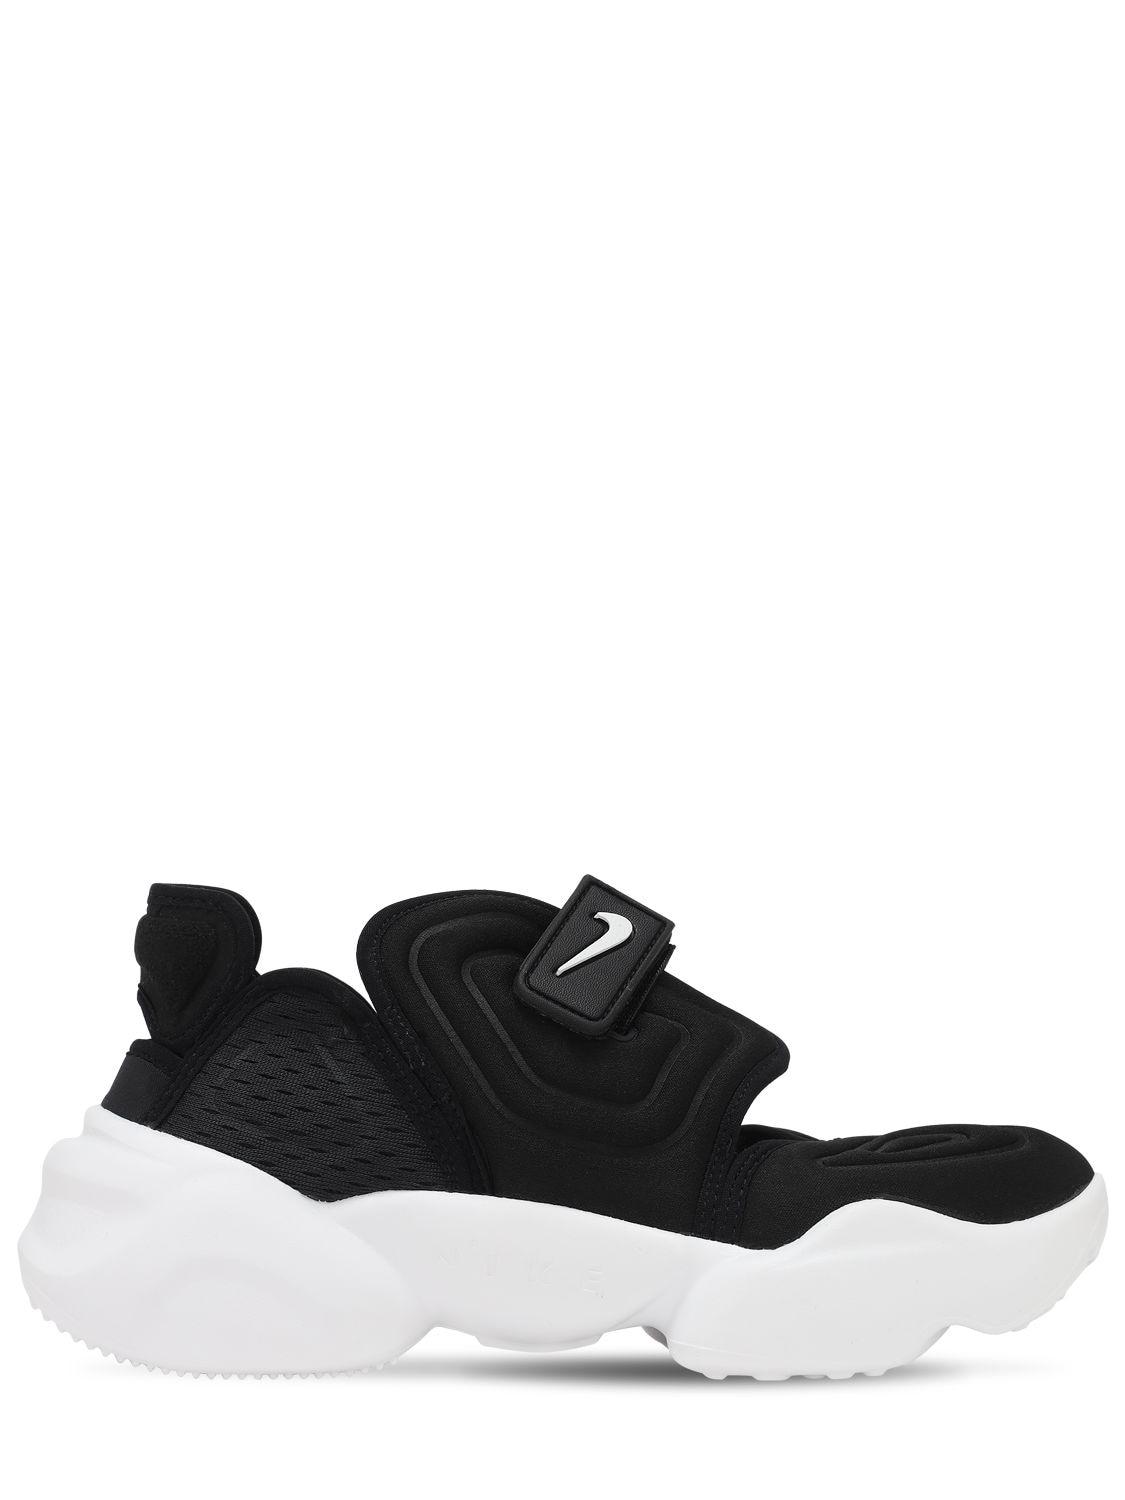 Nike Aqua Rift Neoprene And Mesh Sneakers in Black/Cool Grey-White ...